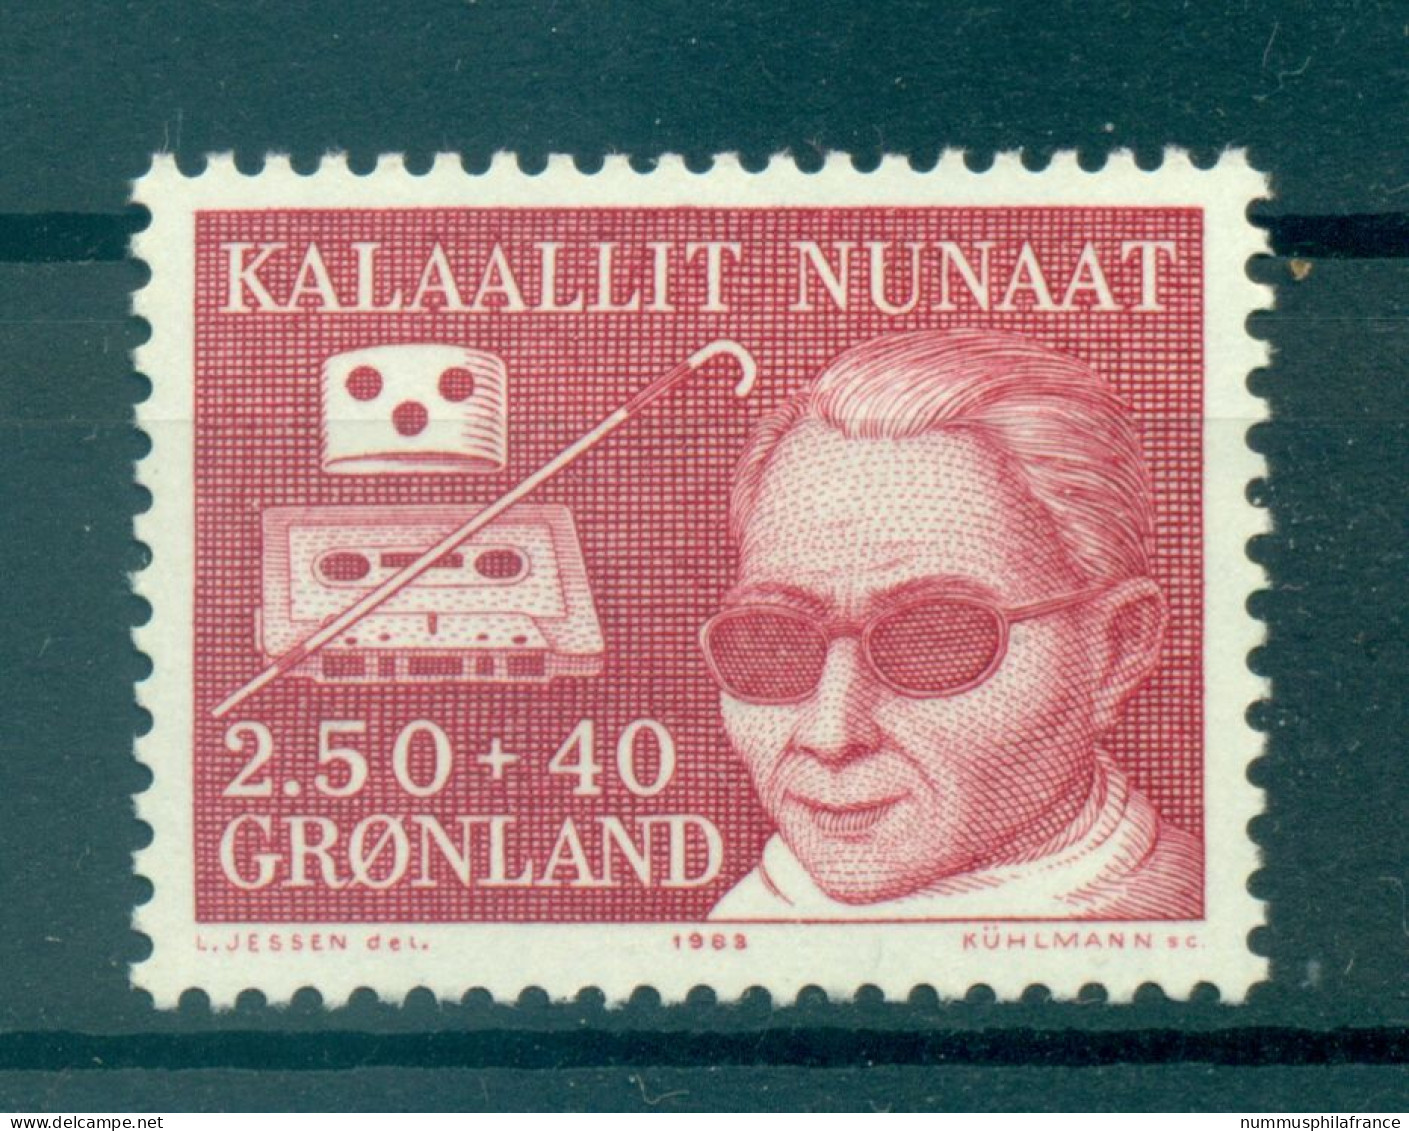 Groenland   1983 - Y & T N. 130 - Surtaxe Pour Les Handicapés  (Michel N. 142) - Neufs